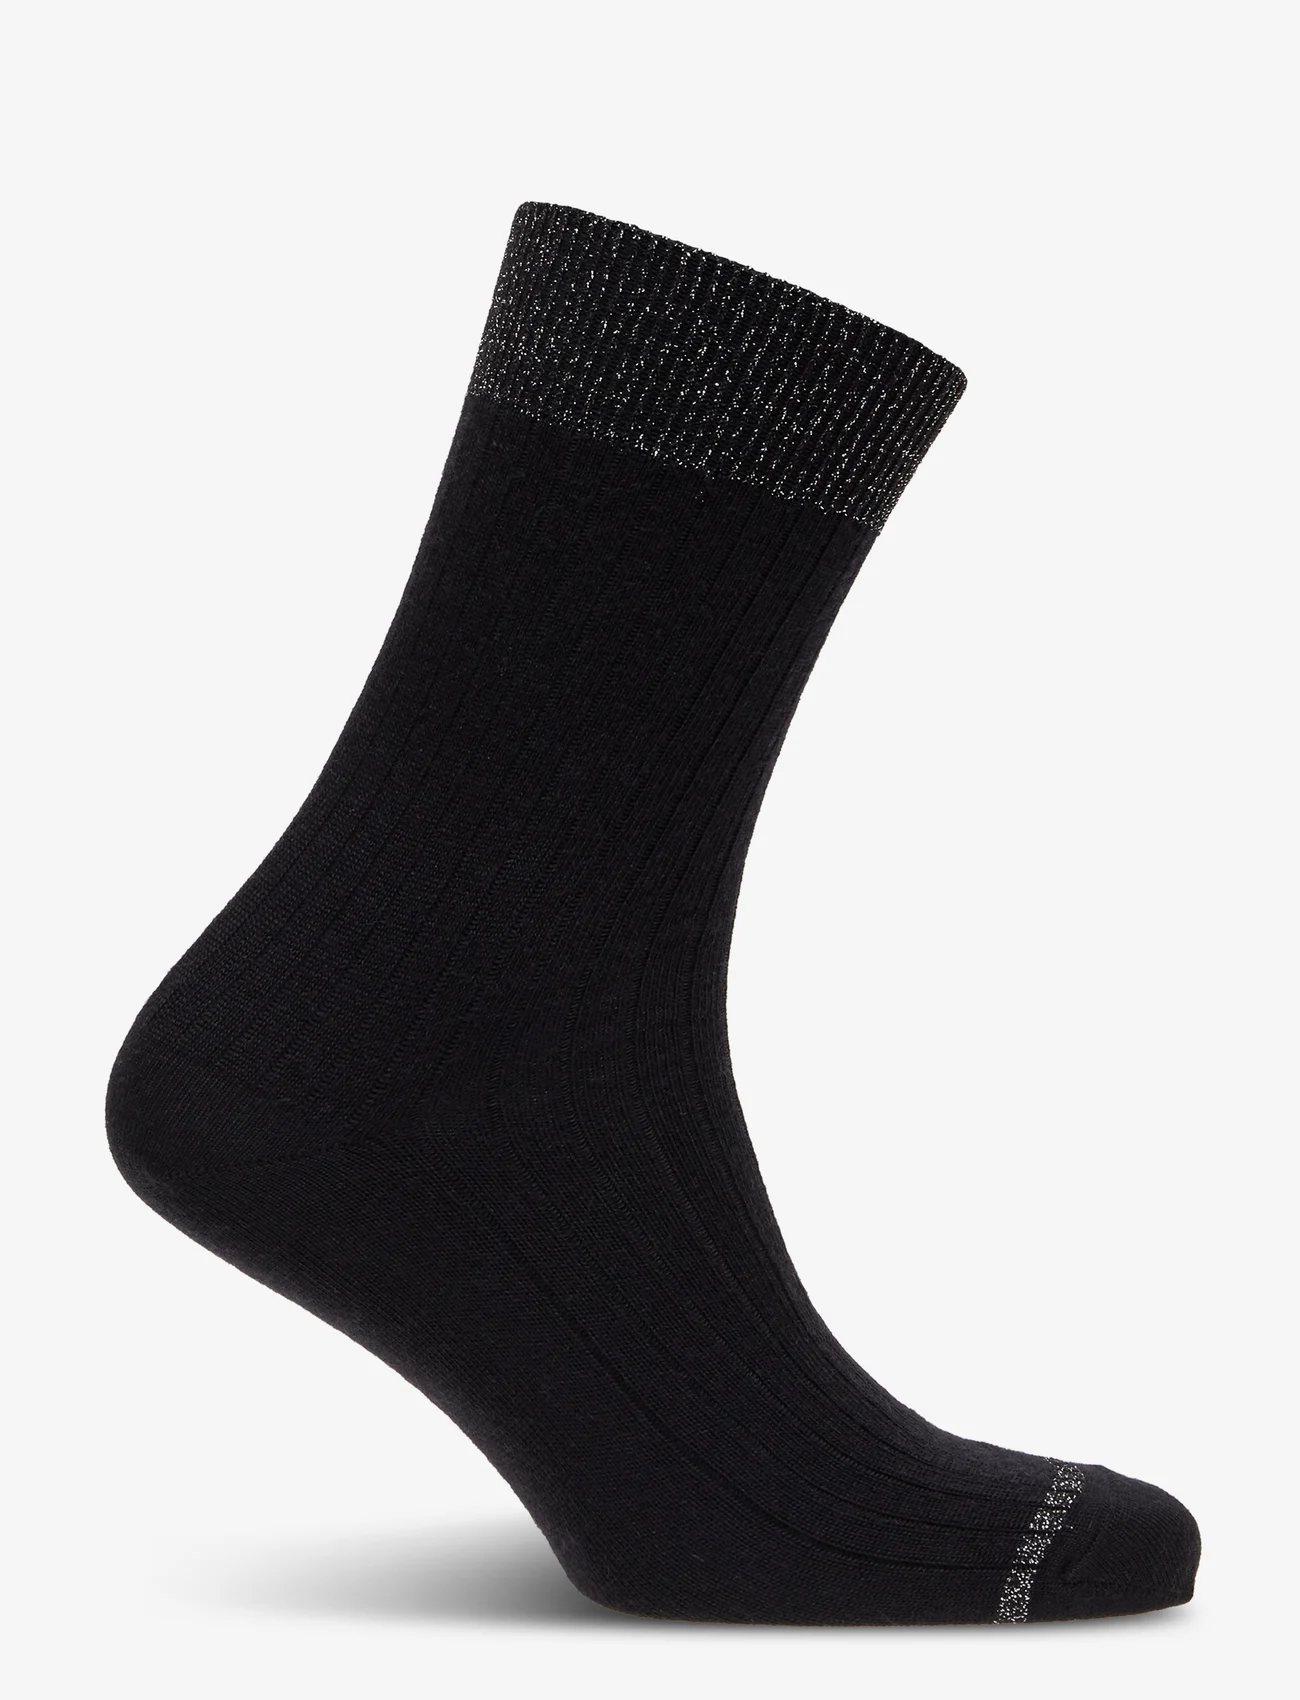 mp Denmark - Erin wool rib socks - lägsta priserna - black - 1